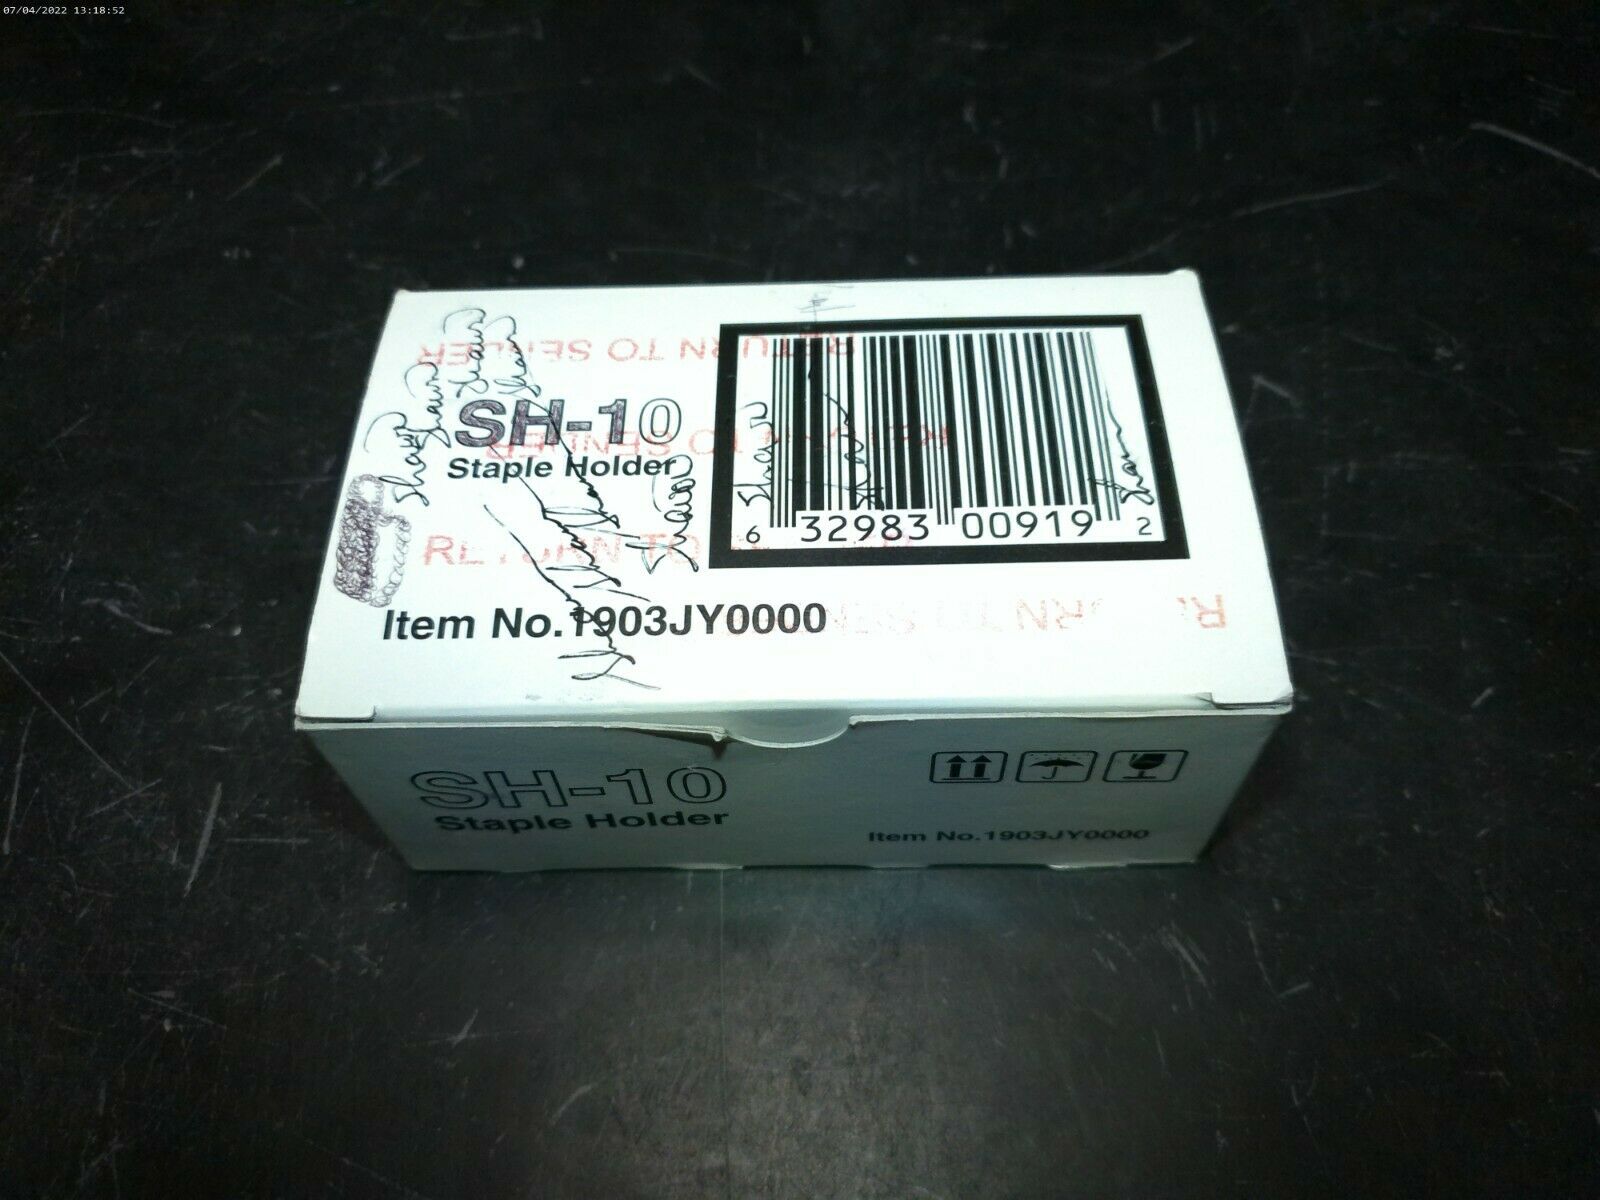 Genuine Kyocera Mita Sh-10 Staples 1903jy0000 *3 Of 5000* Writing On Box